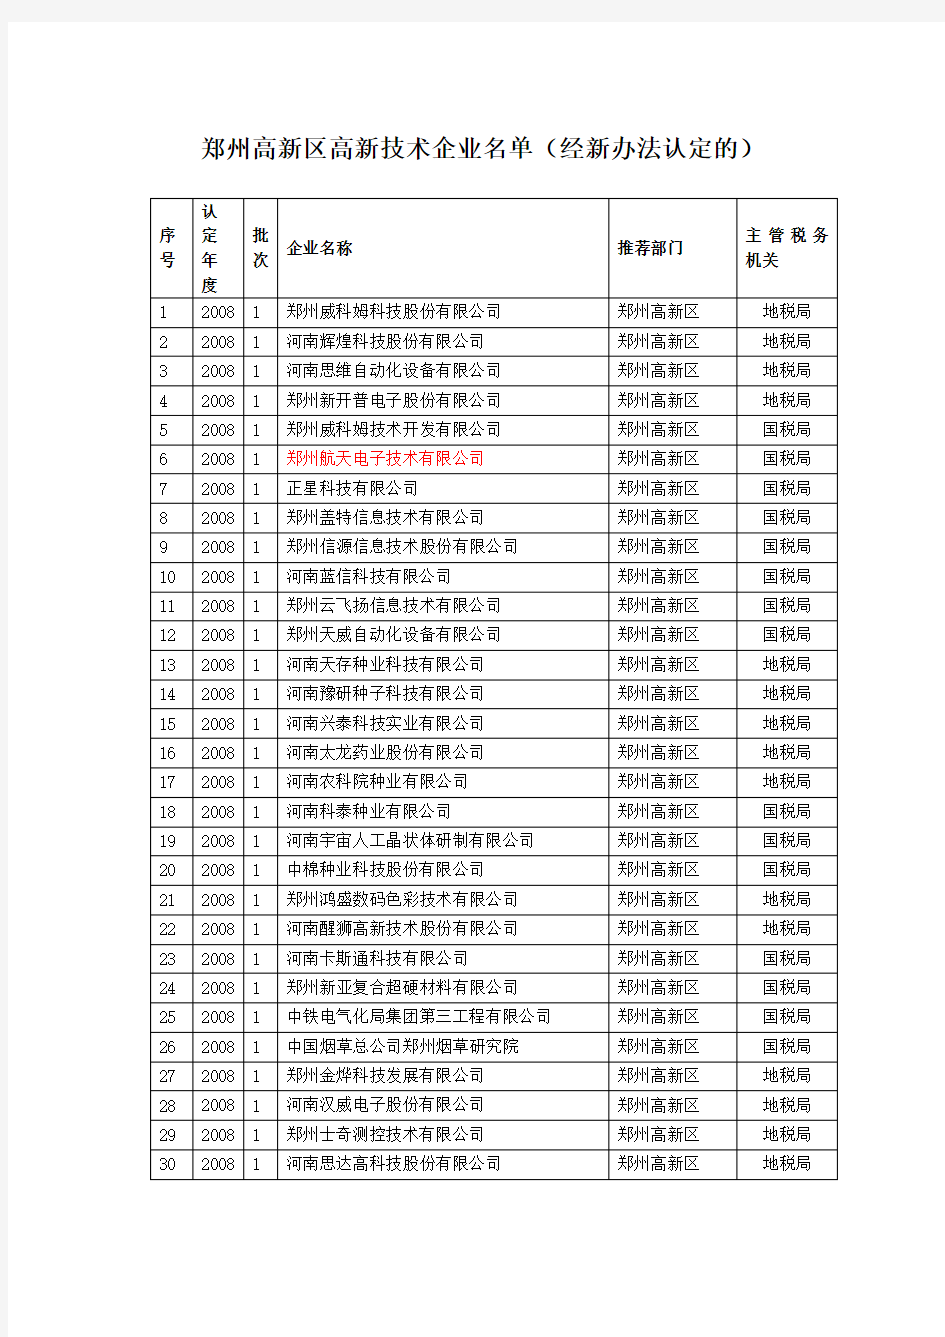 郑州高新区高新技术企业名单(经新办法认定的)